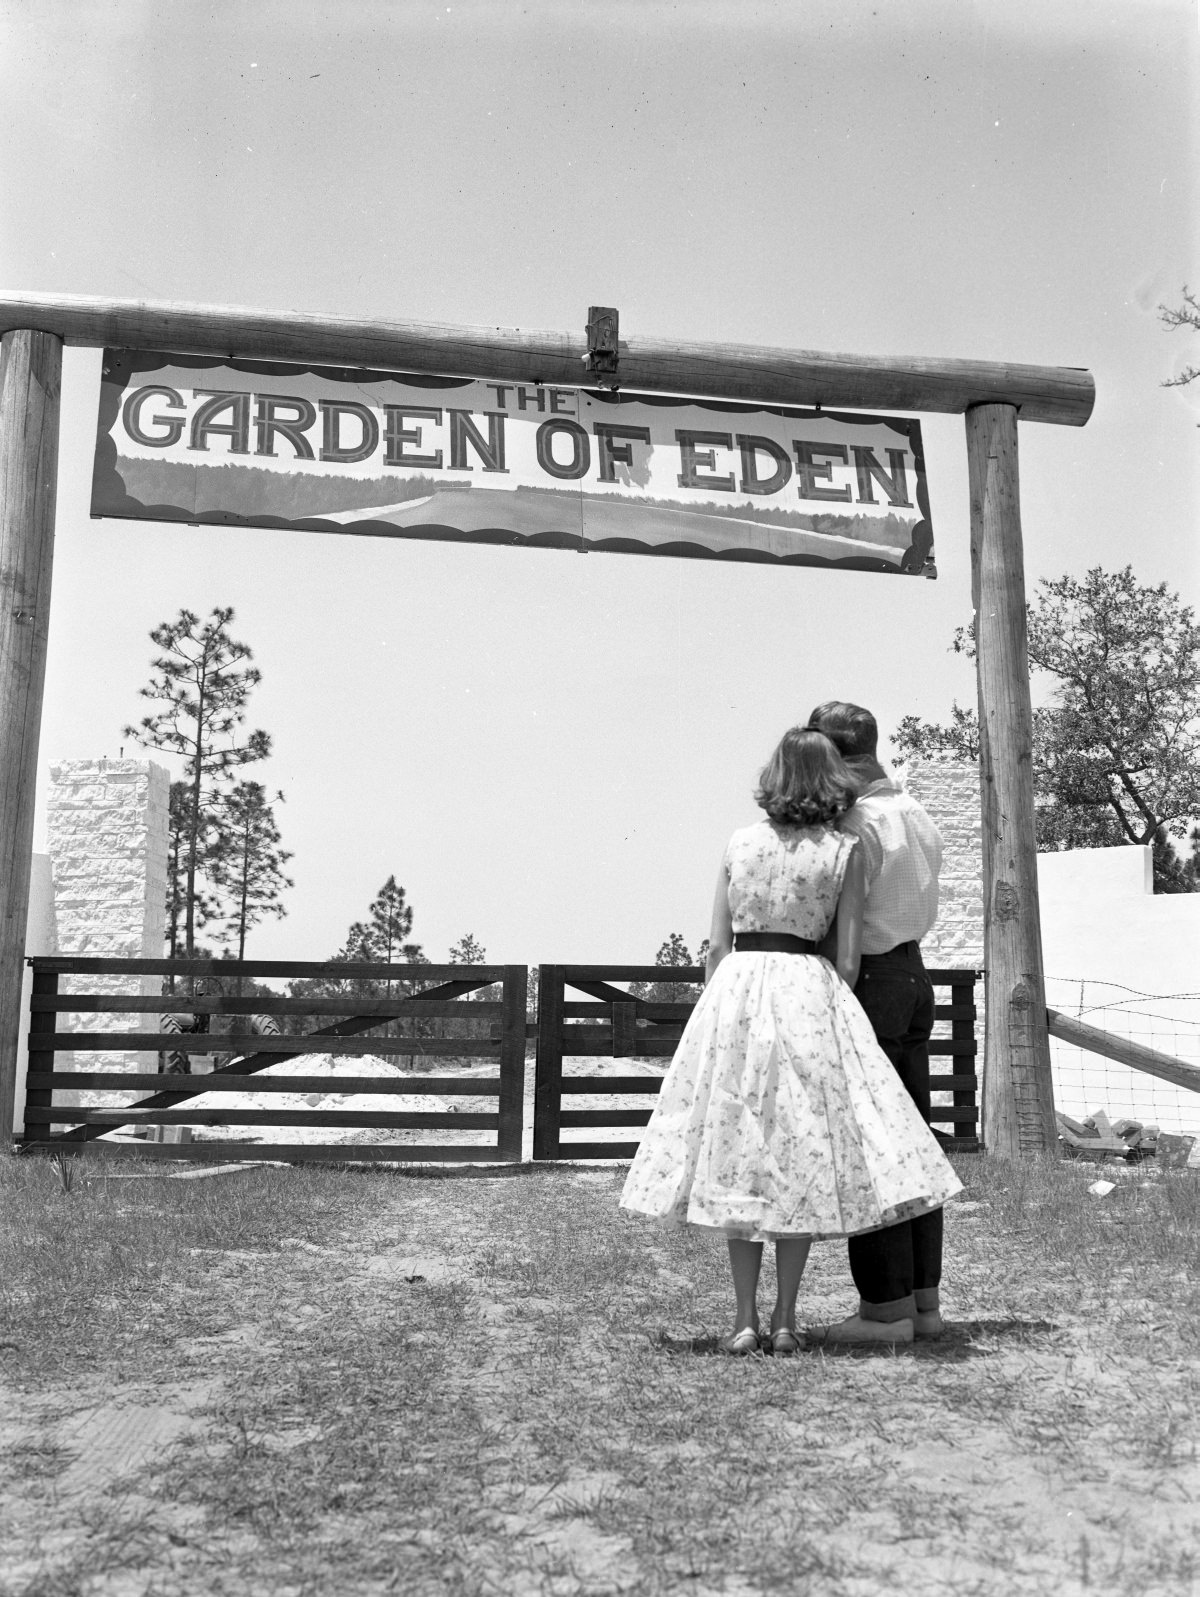 Couple at the Garden of Eden near Bristol, Florida – March 7, 1953